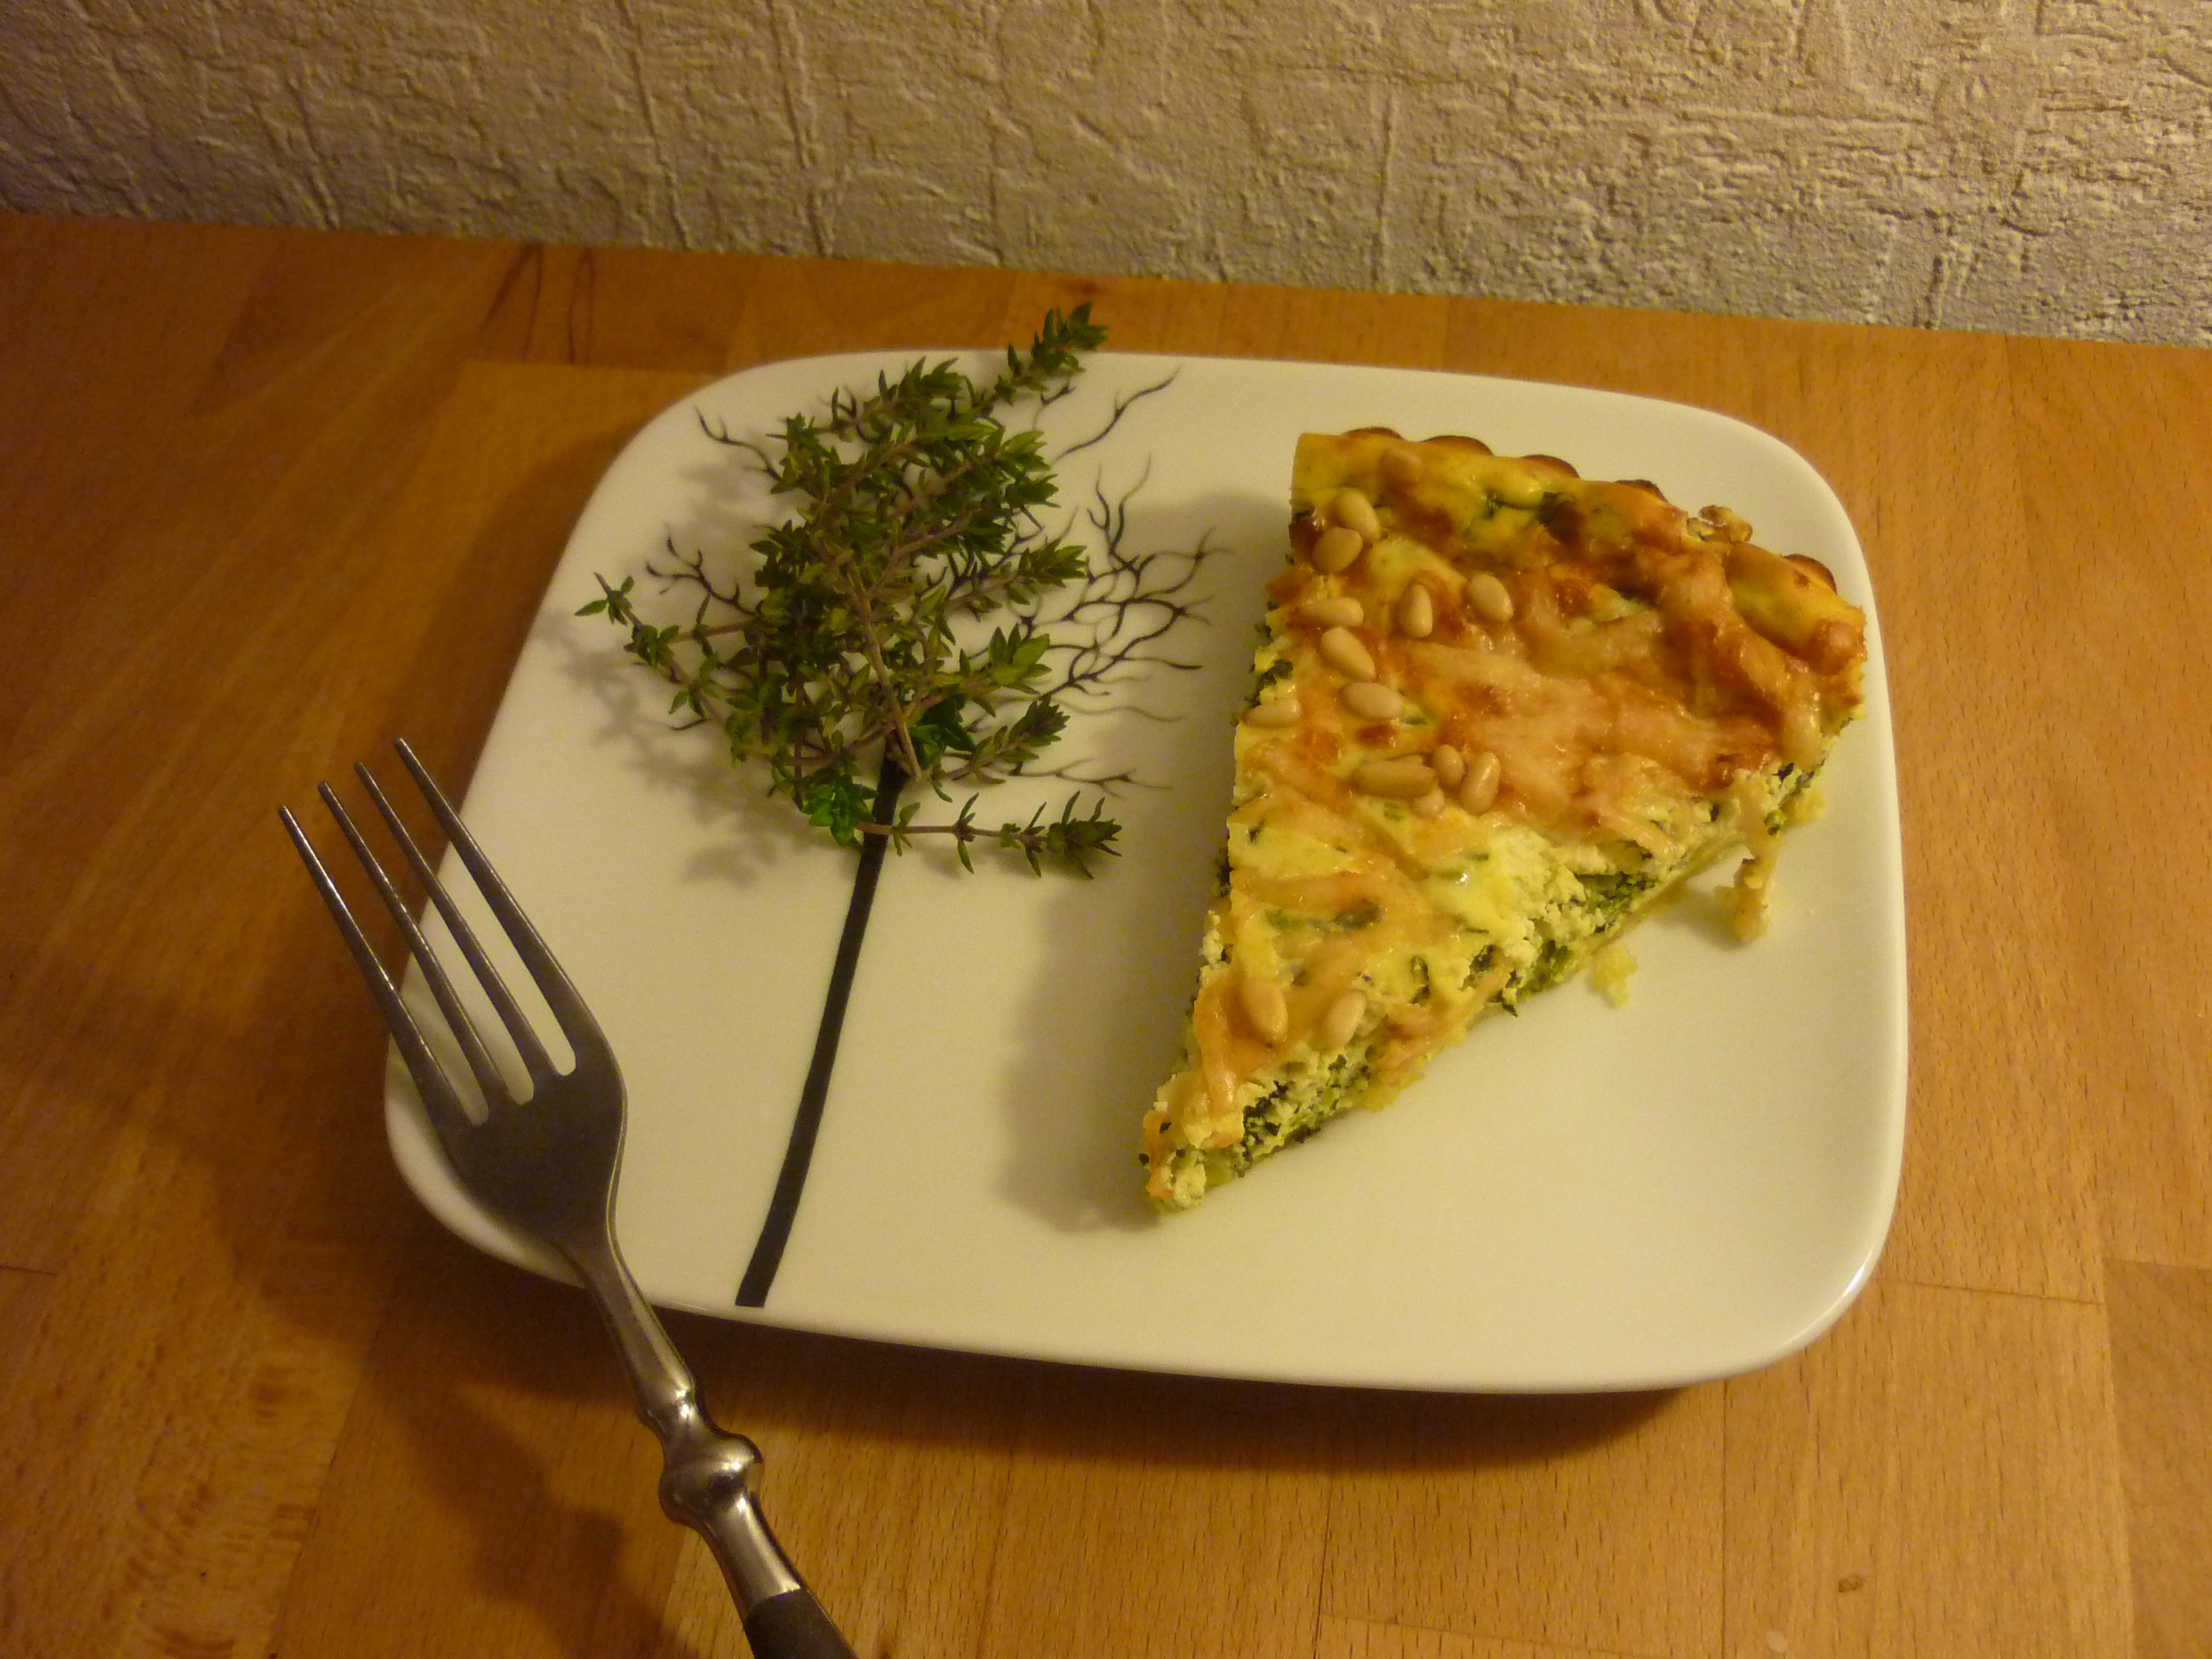 Cheesecake mit Ricotta-Spinat-Füllung* Beitrag von Thekla – Kochen und ...